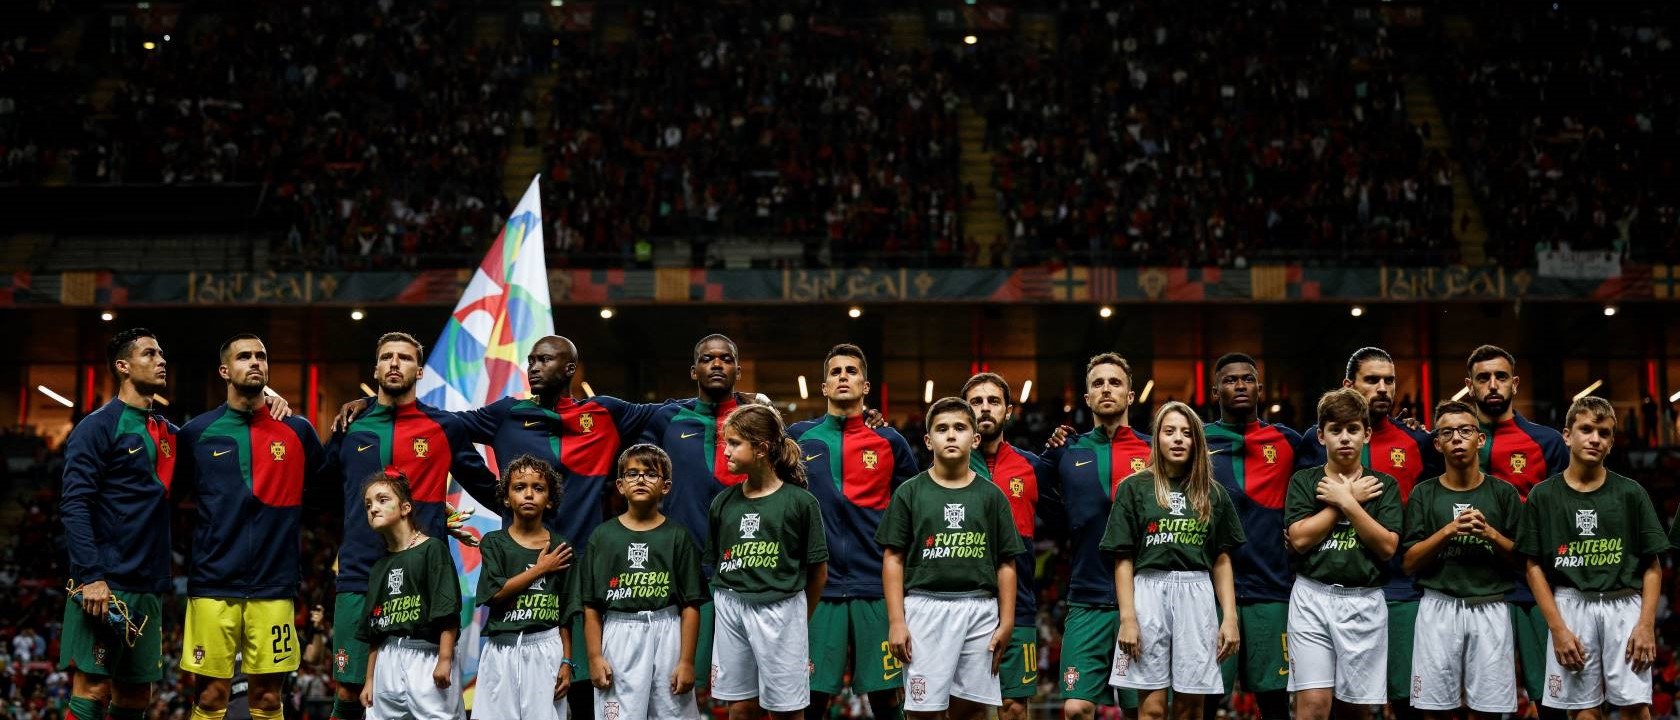 Copa do Mundo: confira 7 benefícios do futebol para a saúde